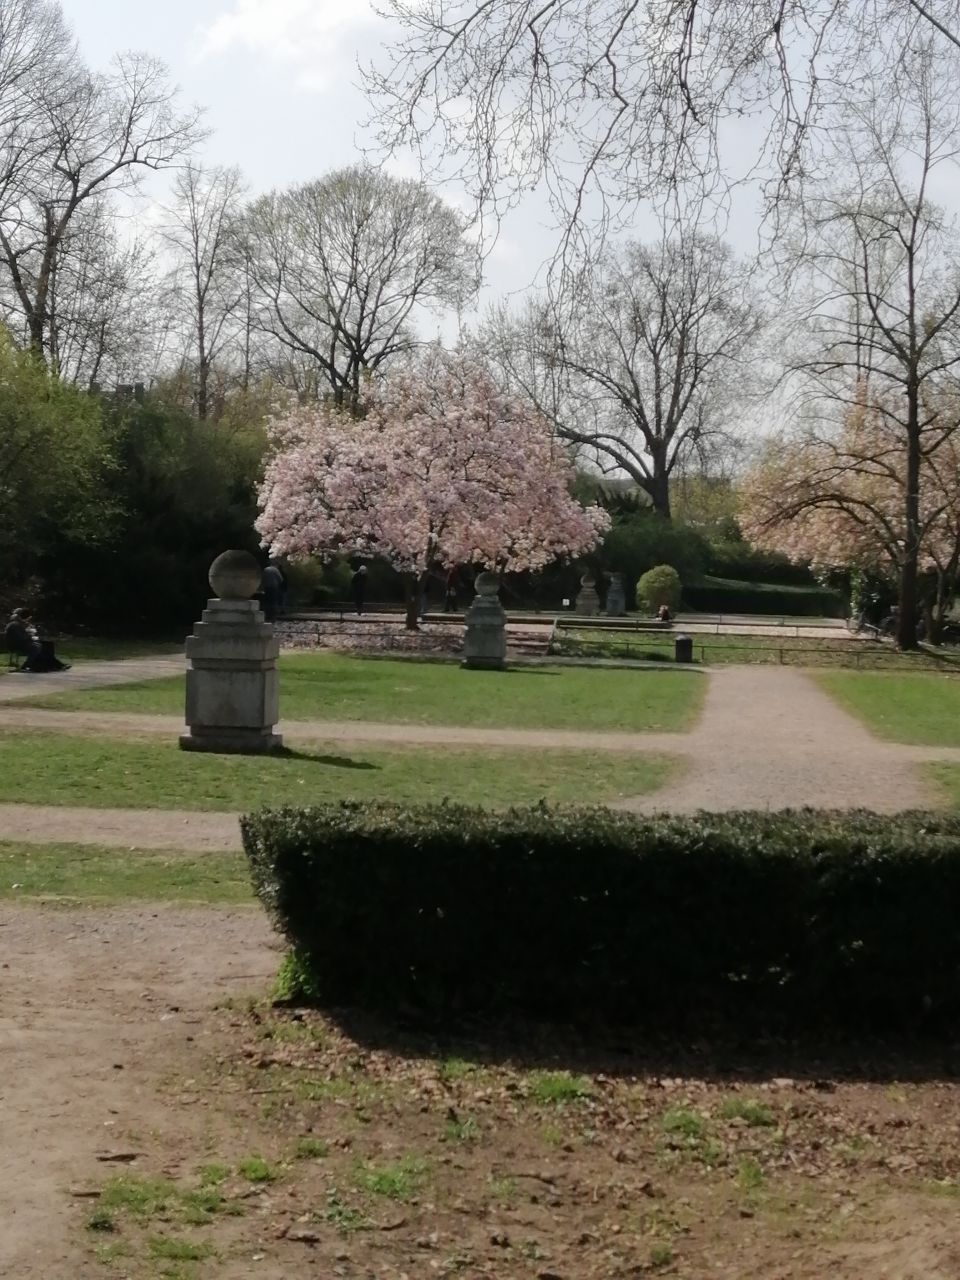 Rosengarten mit kurzgeschnittener Hecke und blühendem Kirschbaum